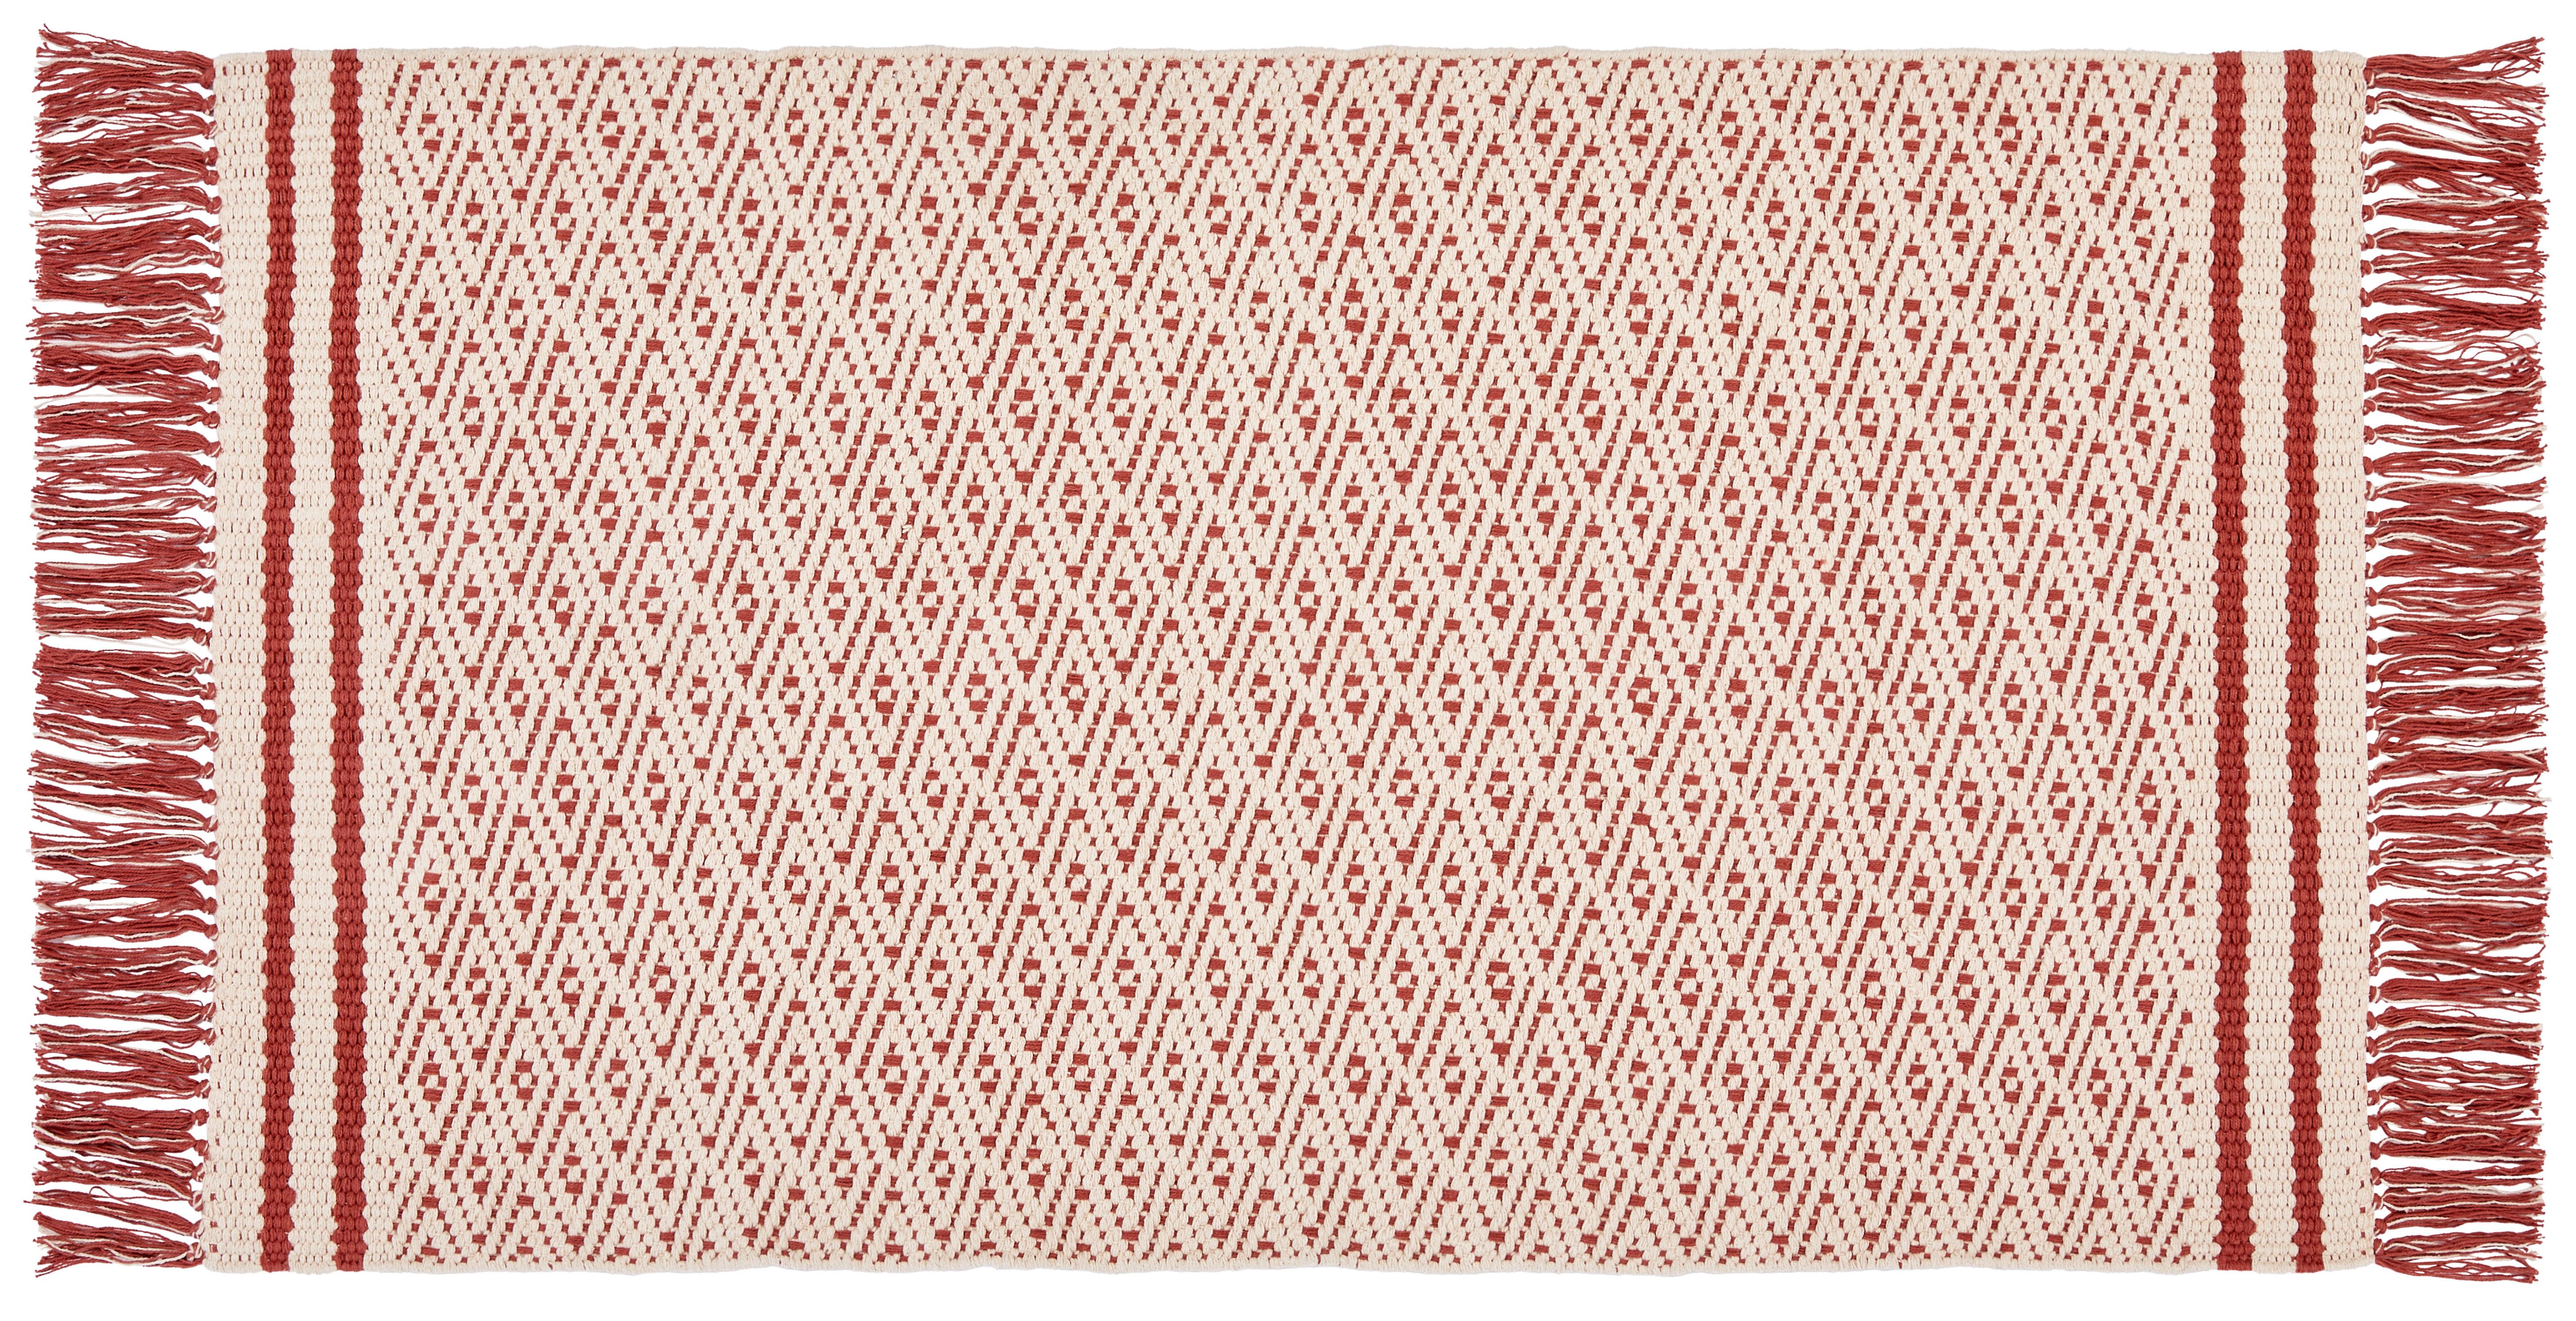 Teppich Vorleger Rot Mit Fransen Iman 70x120 cm - Rot, MODERN, Textil (70/120cm) - Ondega